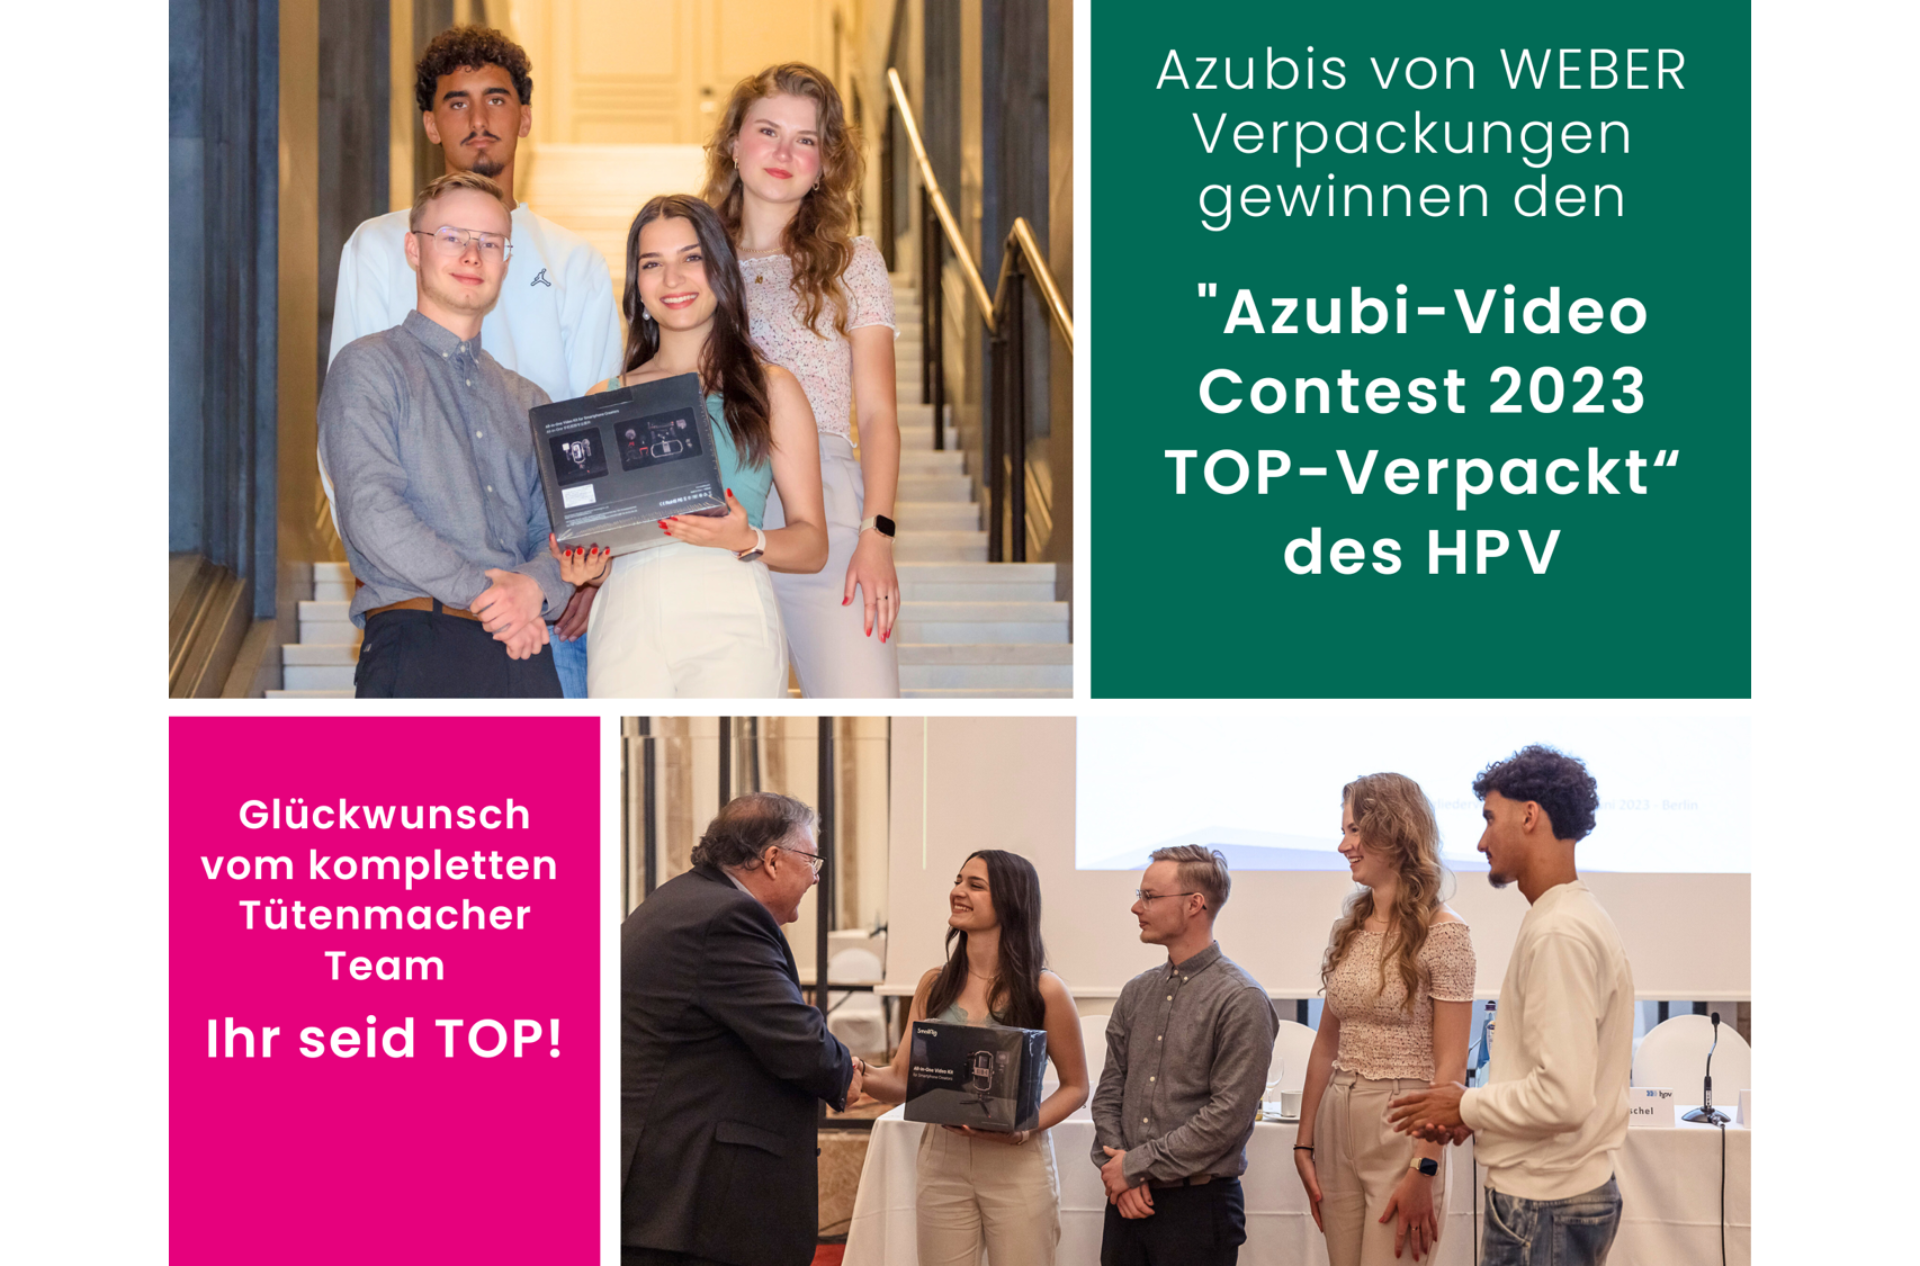 WEBER Verpackungen Azubis gewinnen Videowettbewerb